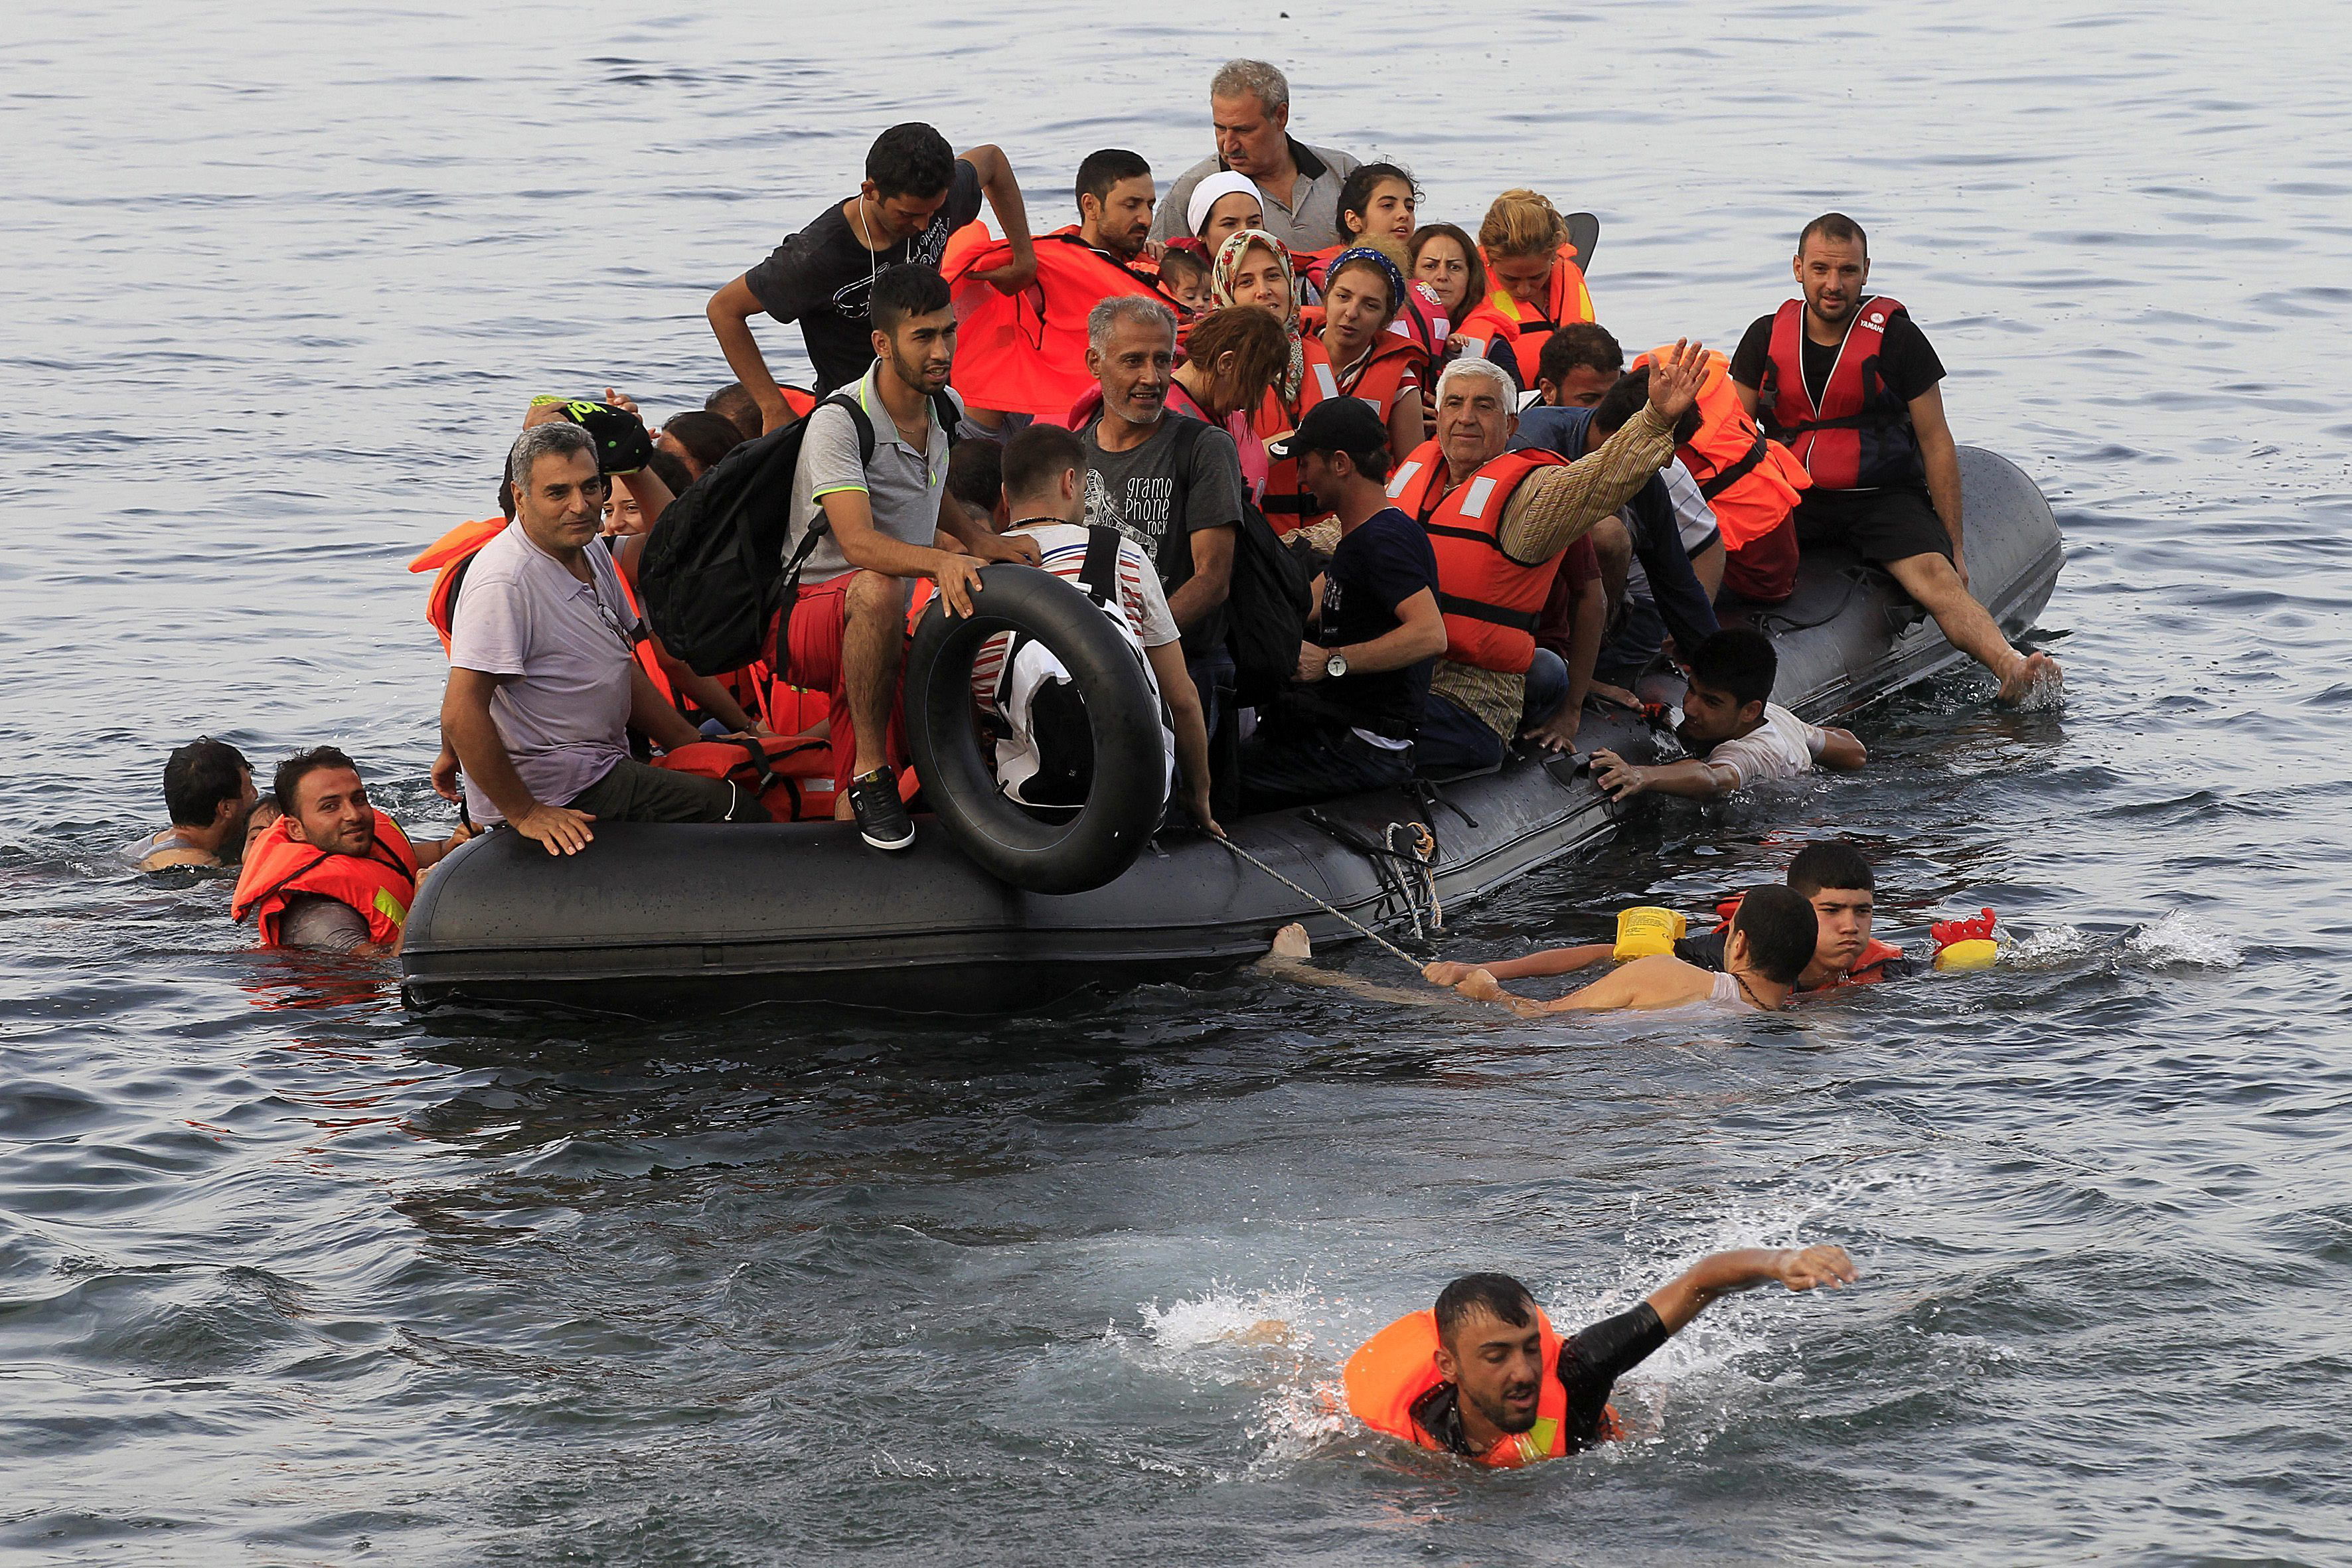 Más de 270 personas murieron este mes intentado cruzar el Mediterráneo.